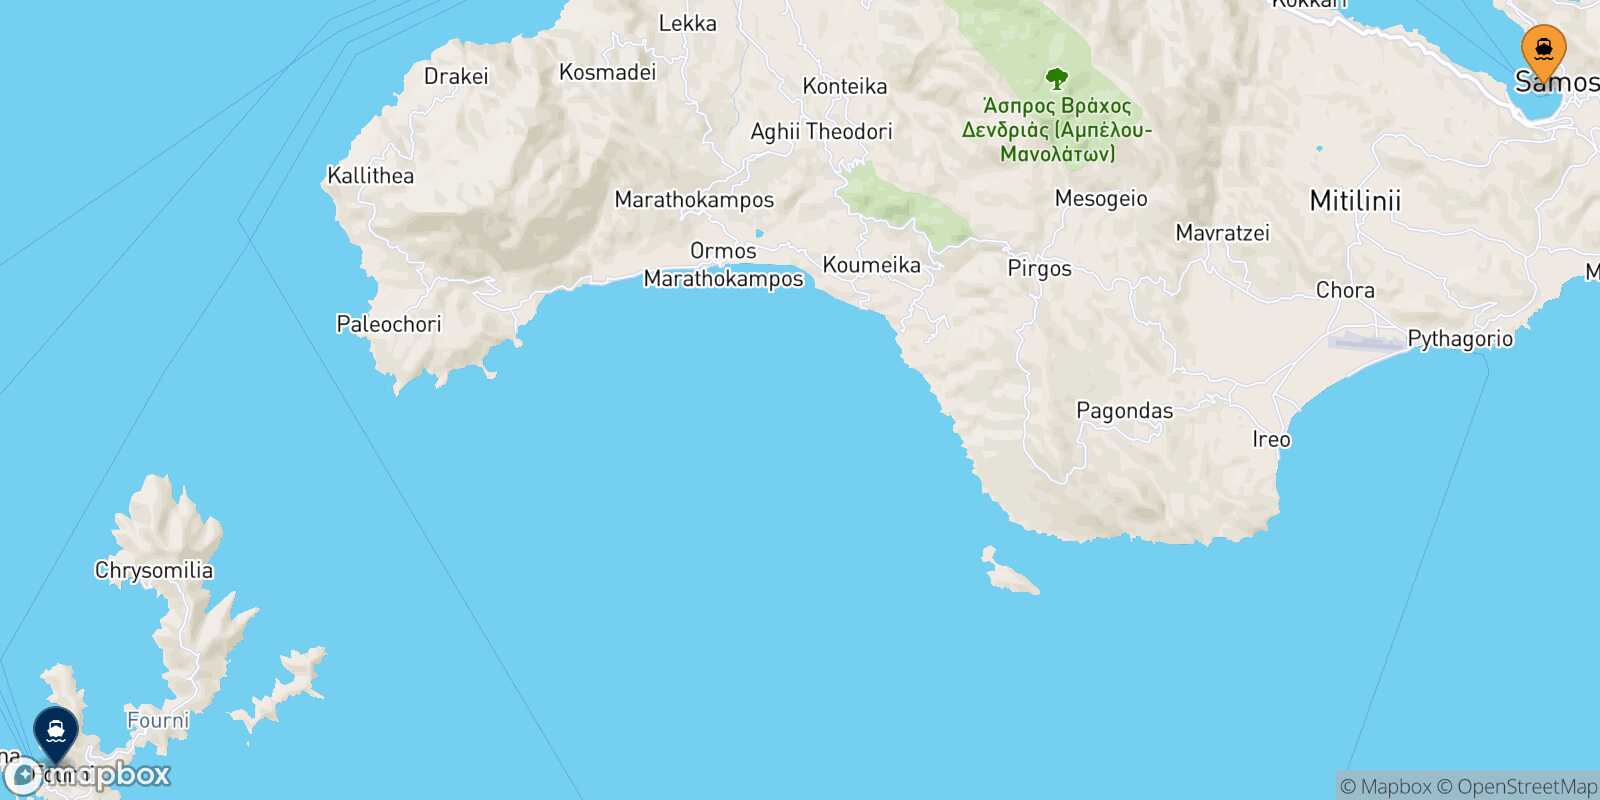 Vathi (Samos) Fourni route map